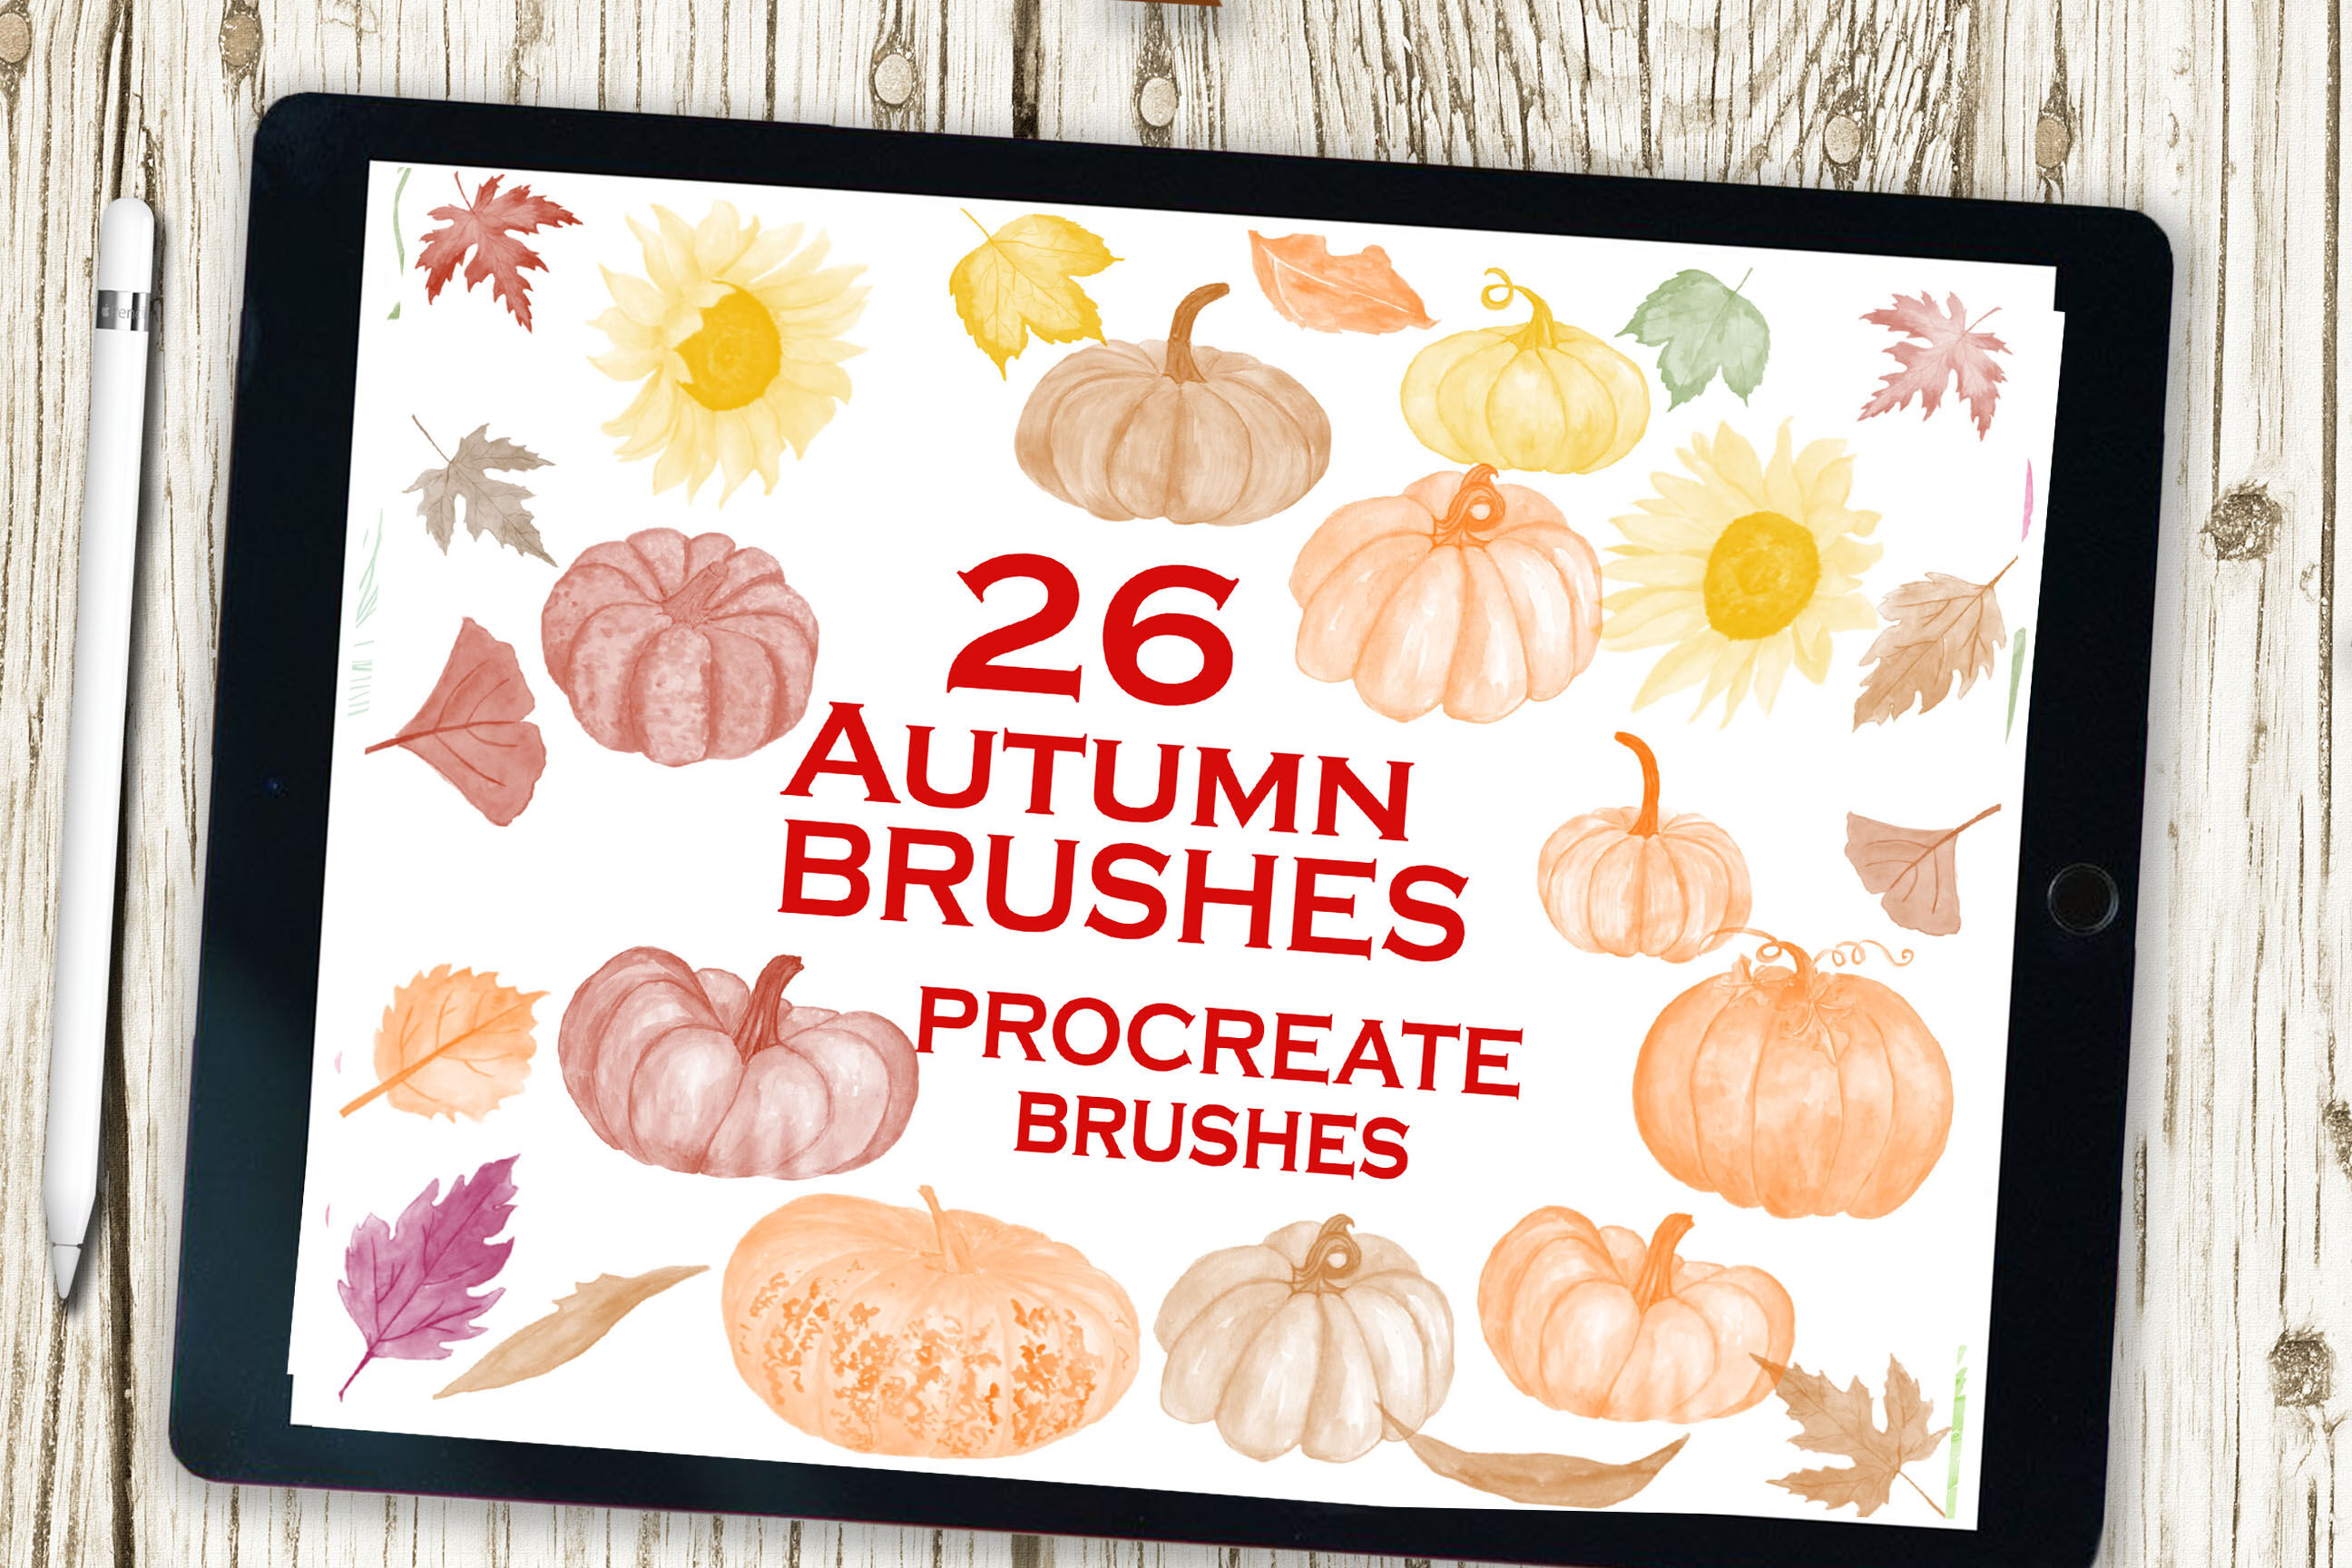 procreate autumn brushes free